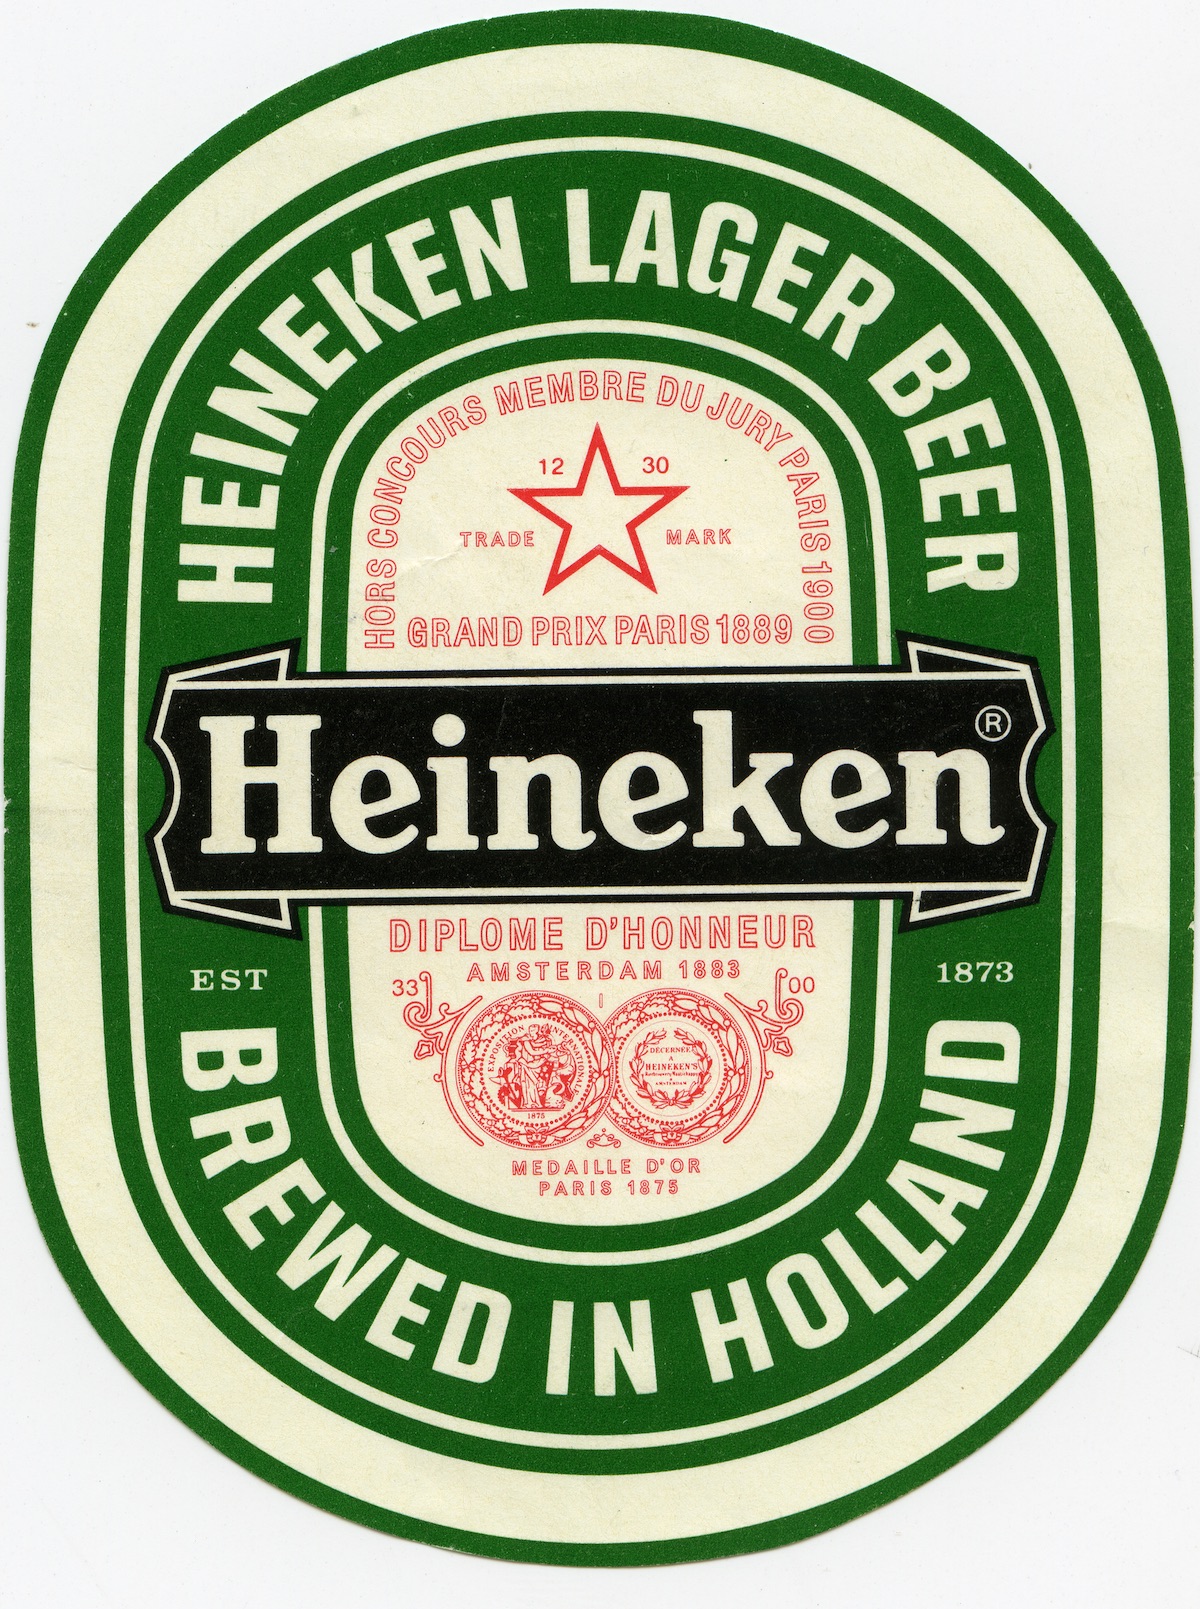 The Heineken Label Heineken Collection Foundation